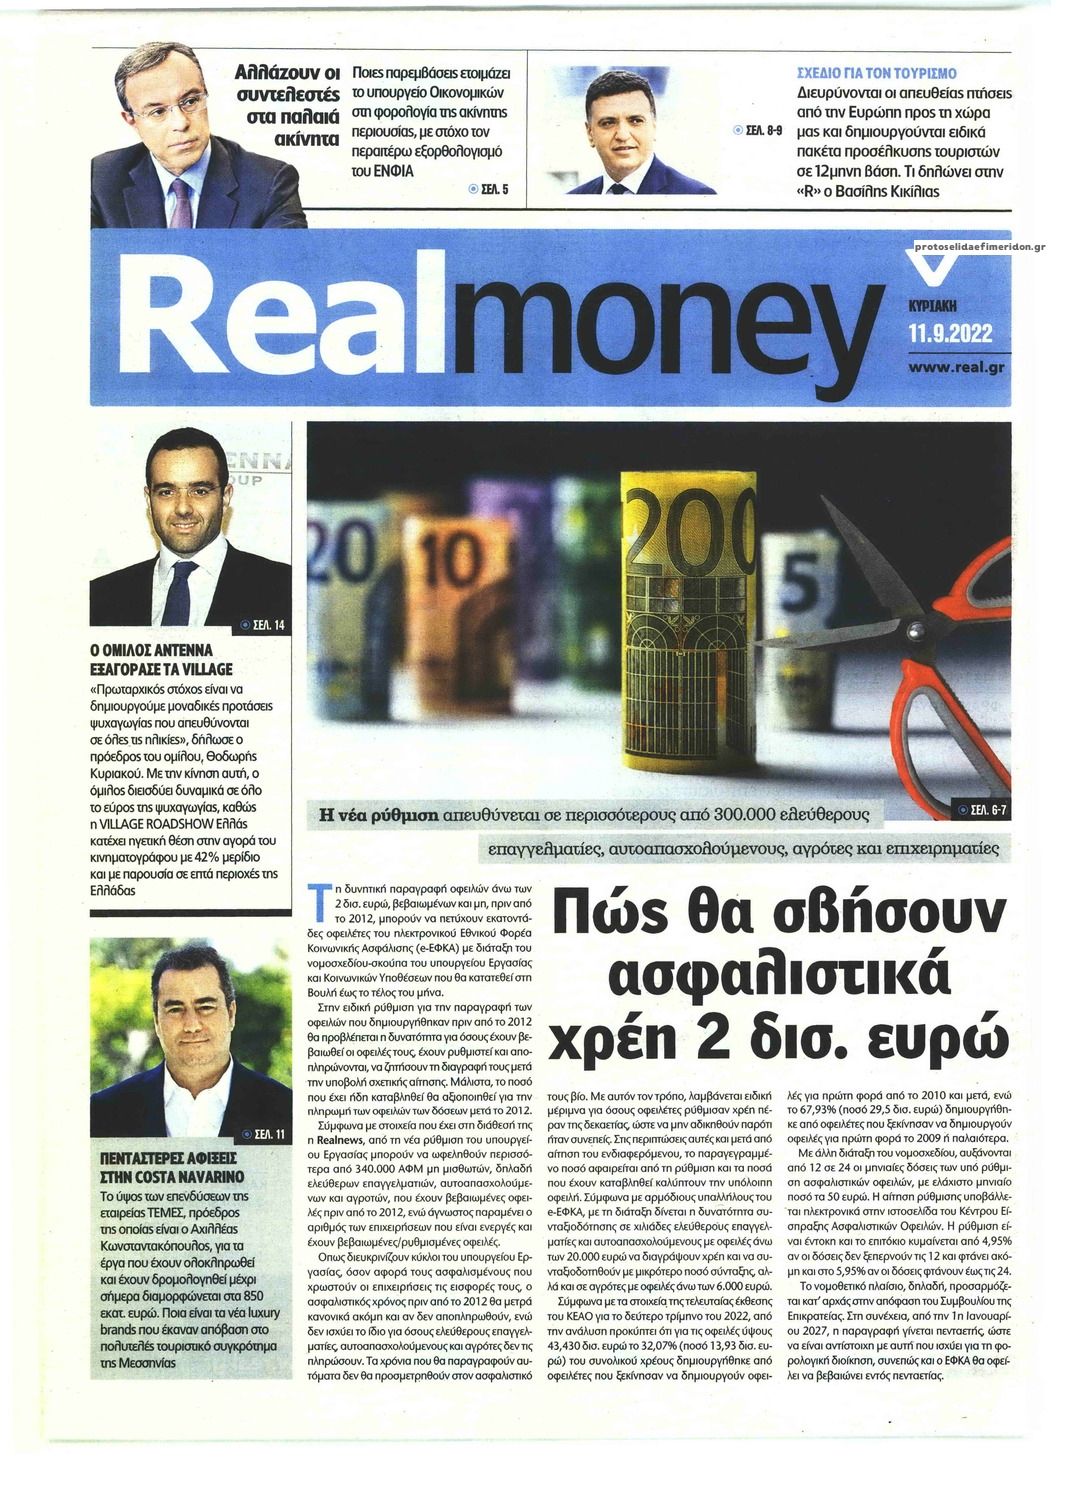 Πρωτοσέλιδο εφημερίδας REAL NEWS - MONEY